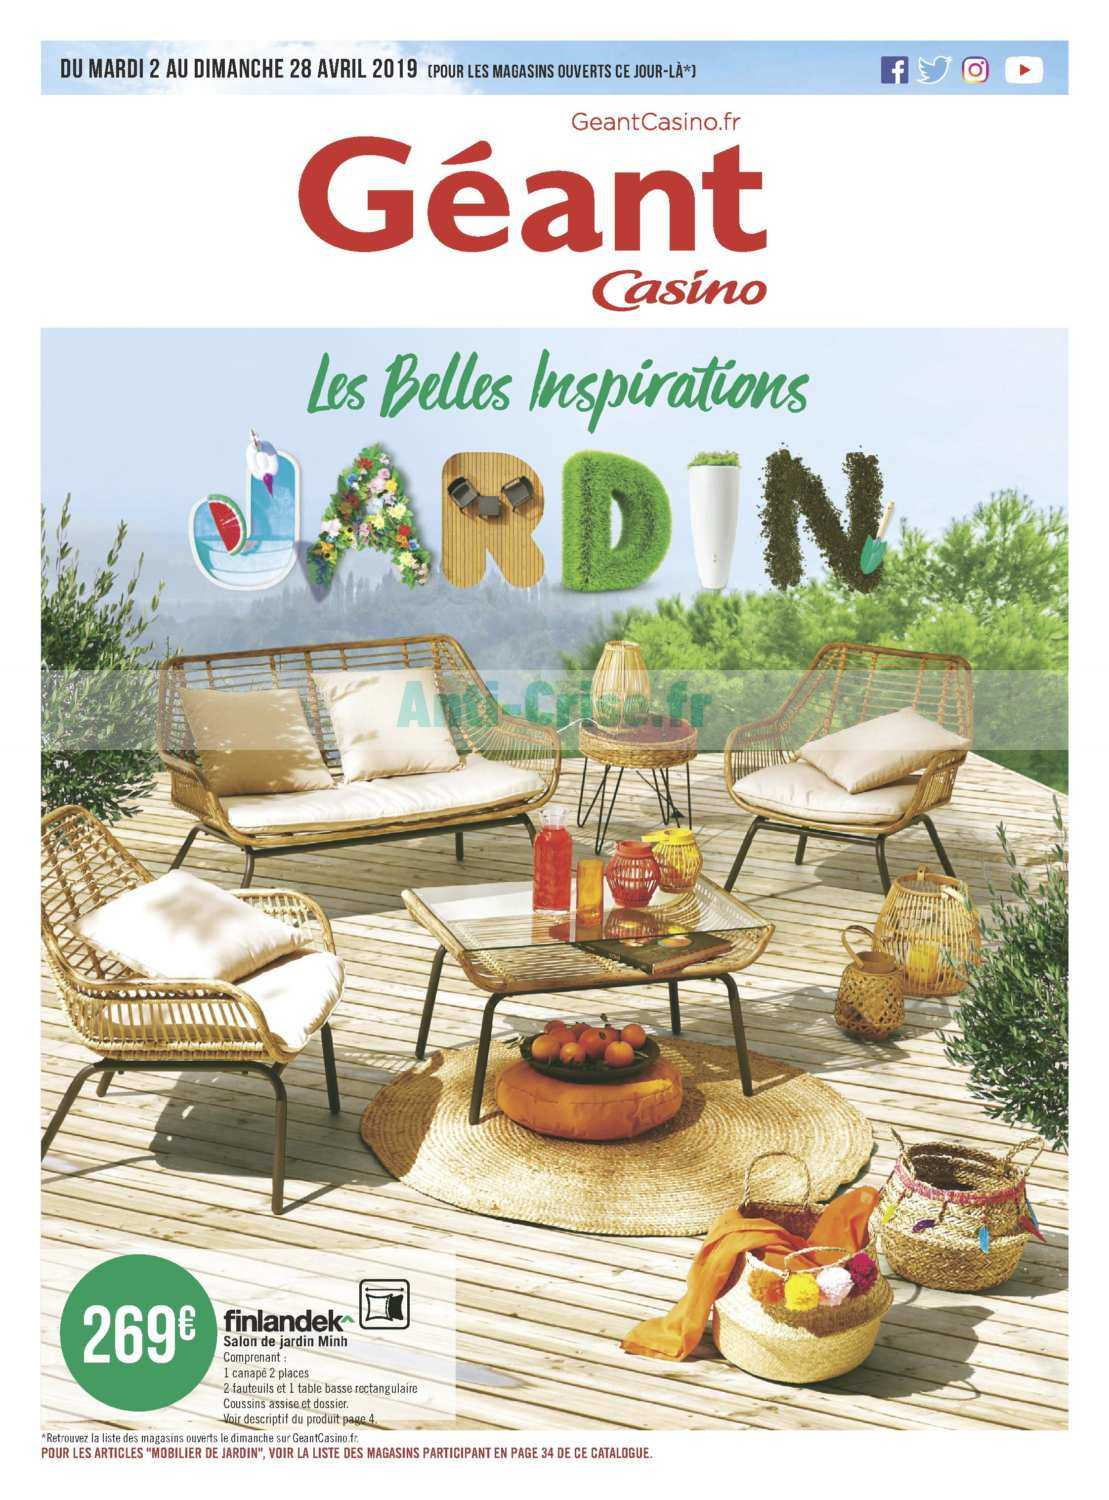 Salon De Jardin Geant Casino 2019 - The Best Undercut Ponytail dedans Salon De Jardin Geant Casino